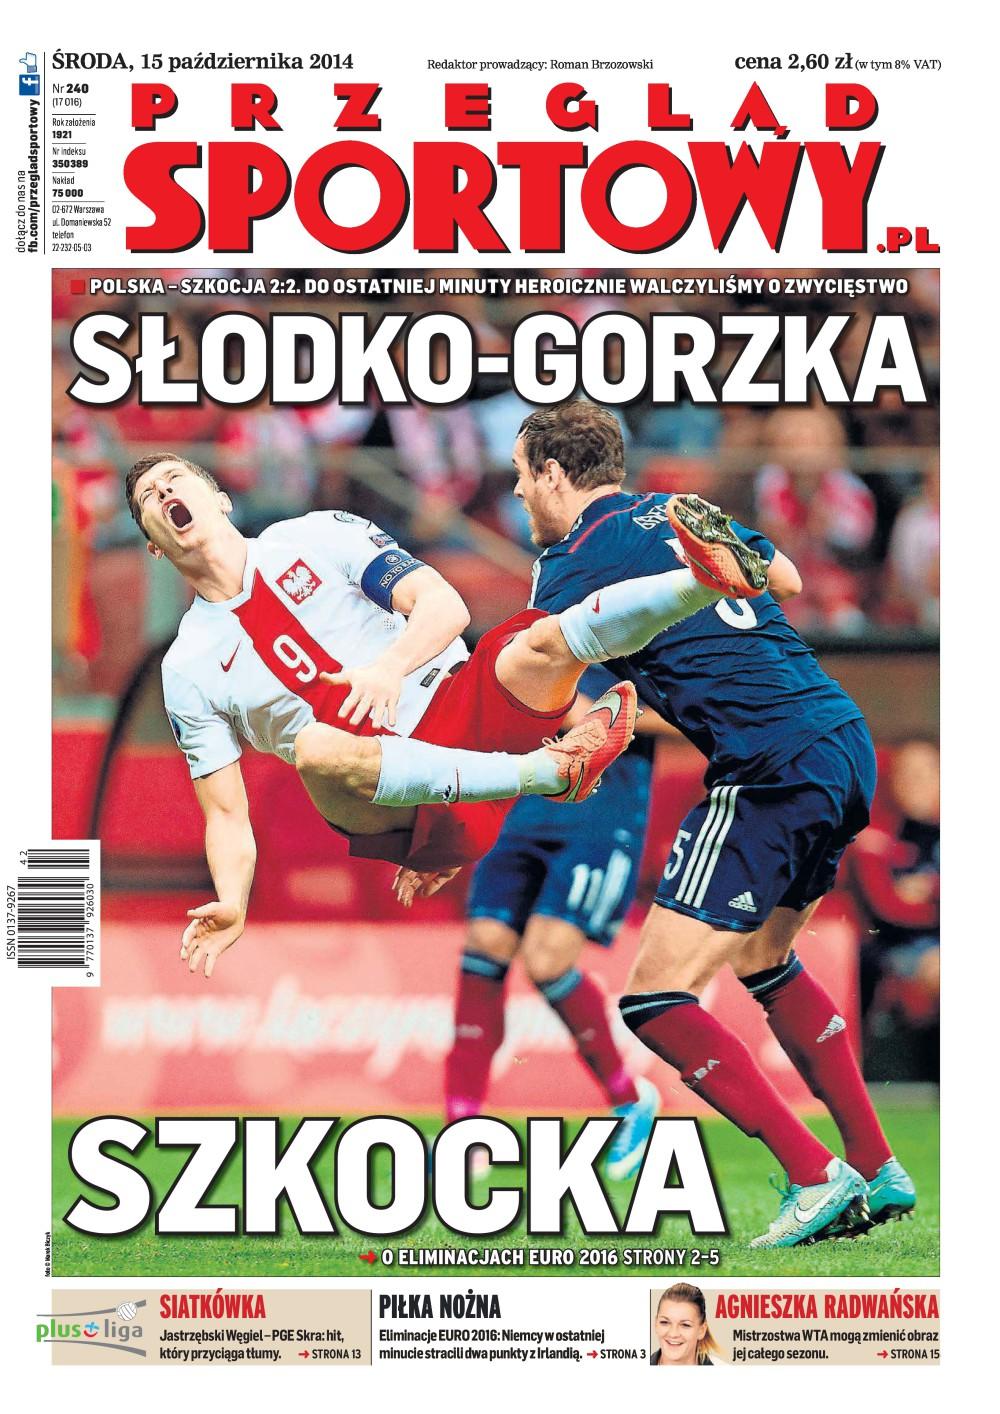 Okładka przegląd sportowy po meczu Polska - Szkocja 2:2 (14.10.2014)